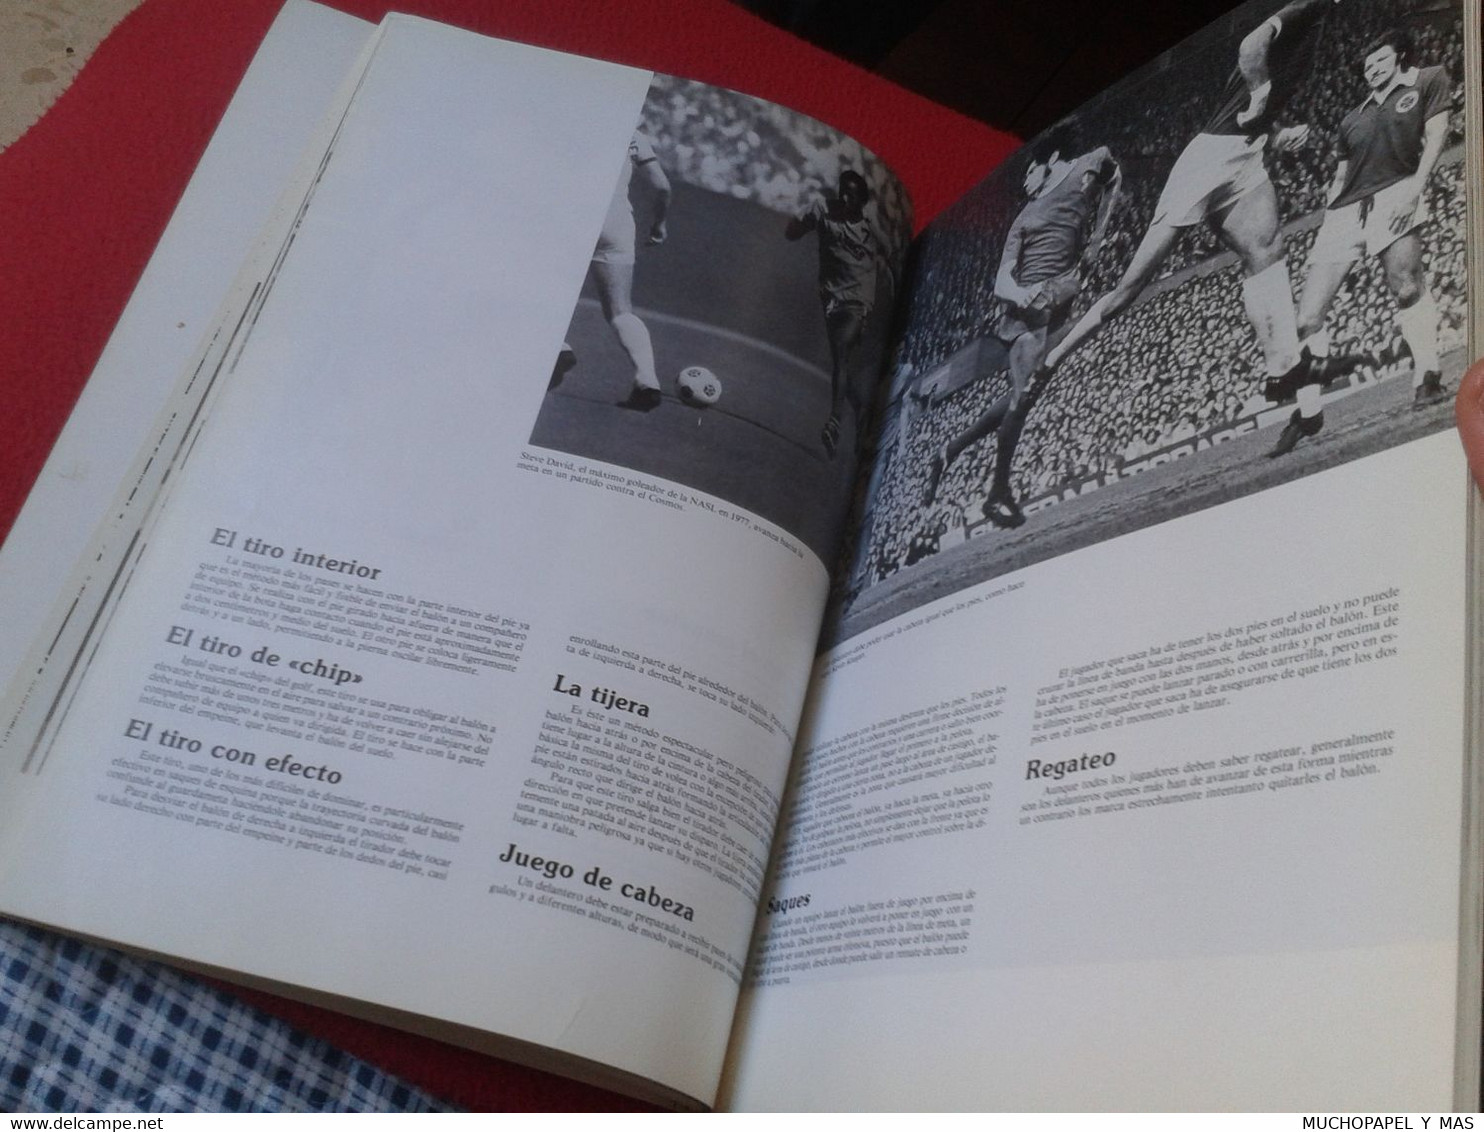 LIBRO FÚTBOL HISTORIA COMPLETA TÁCTICAS DE JUEGO POR JARED LEBOW MUNDIALES ESPAÑA 1982 82 (Y OTROS) VER..SOCCER FOOTBALL